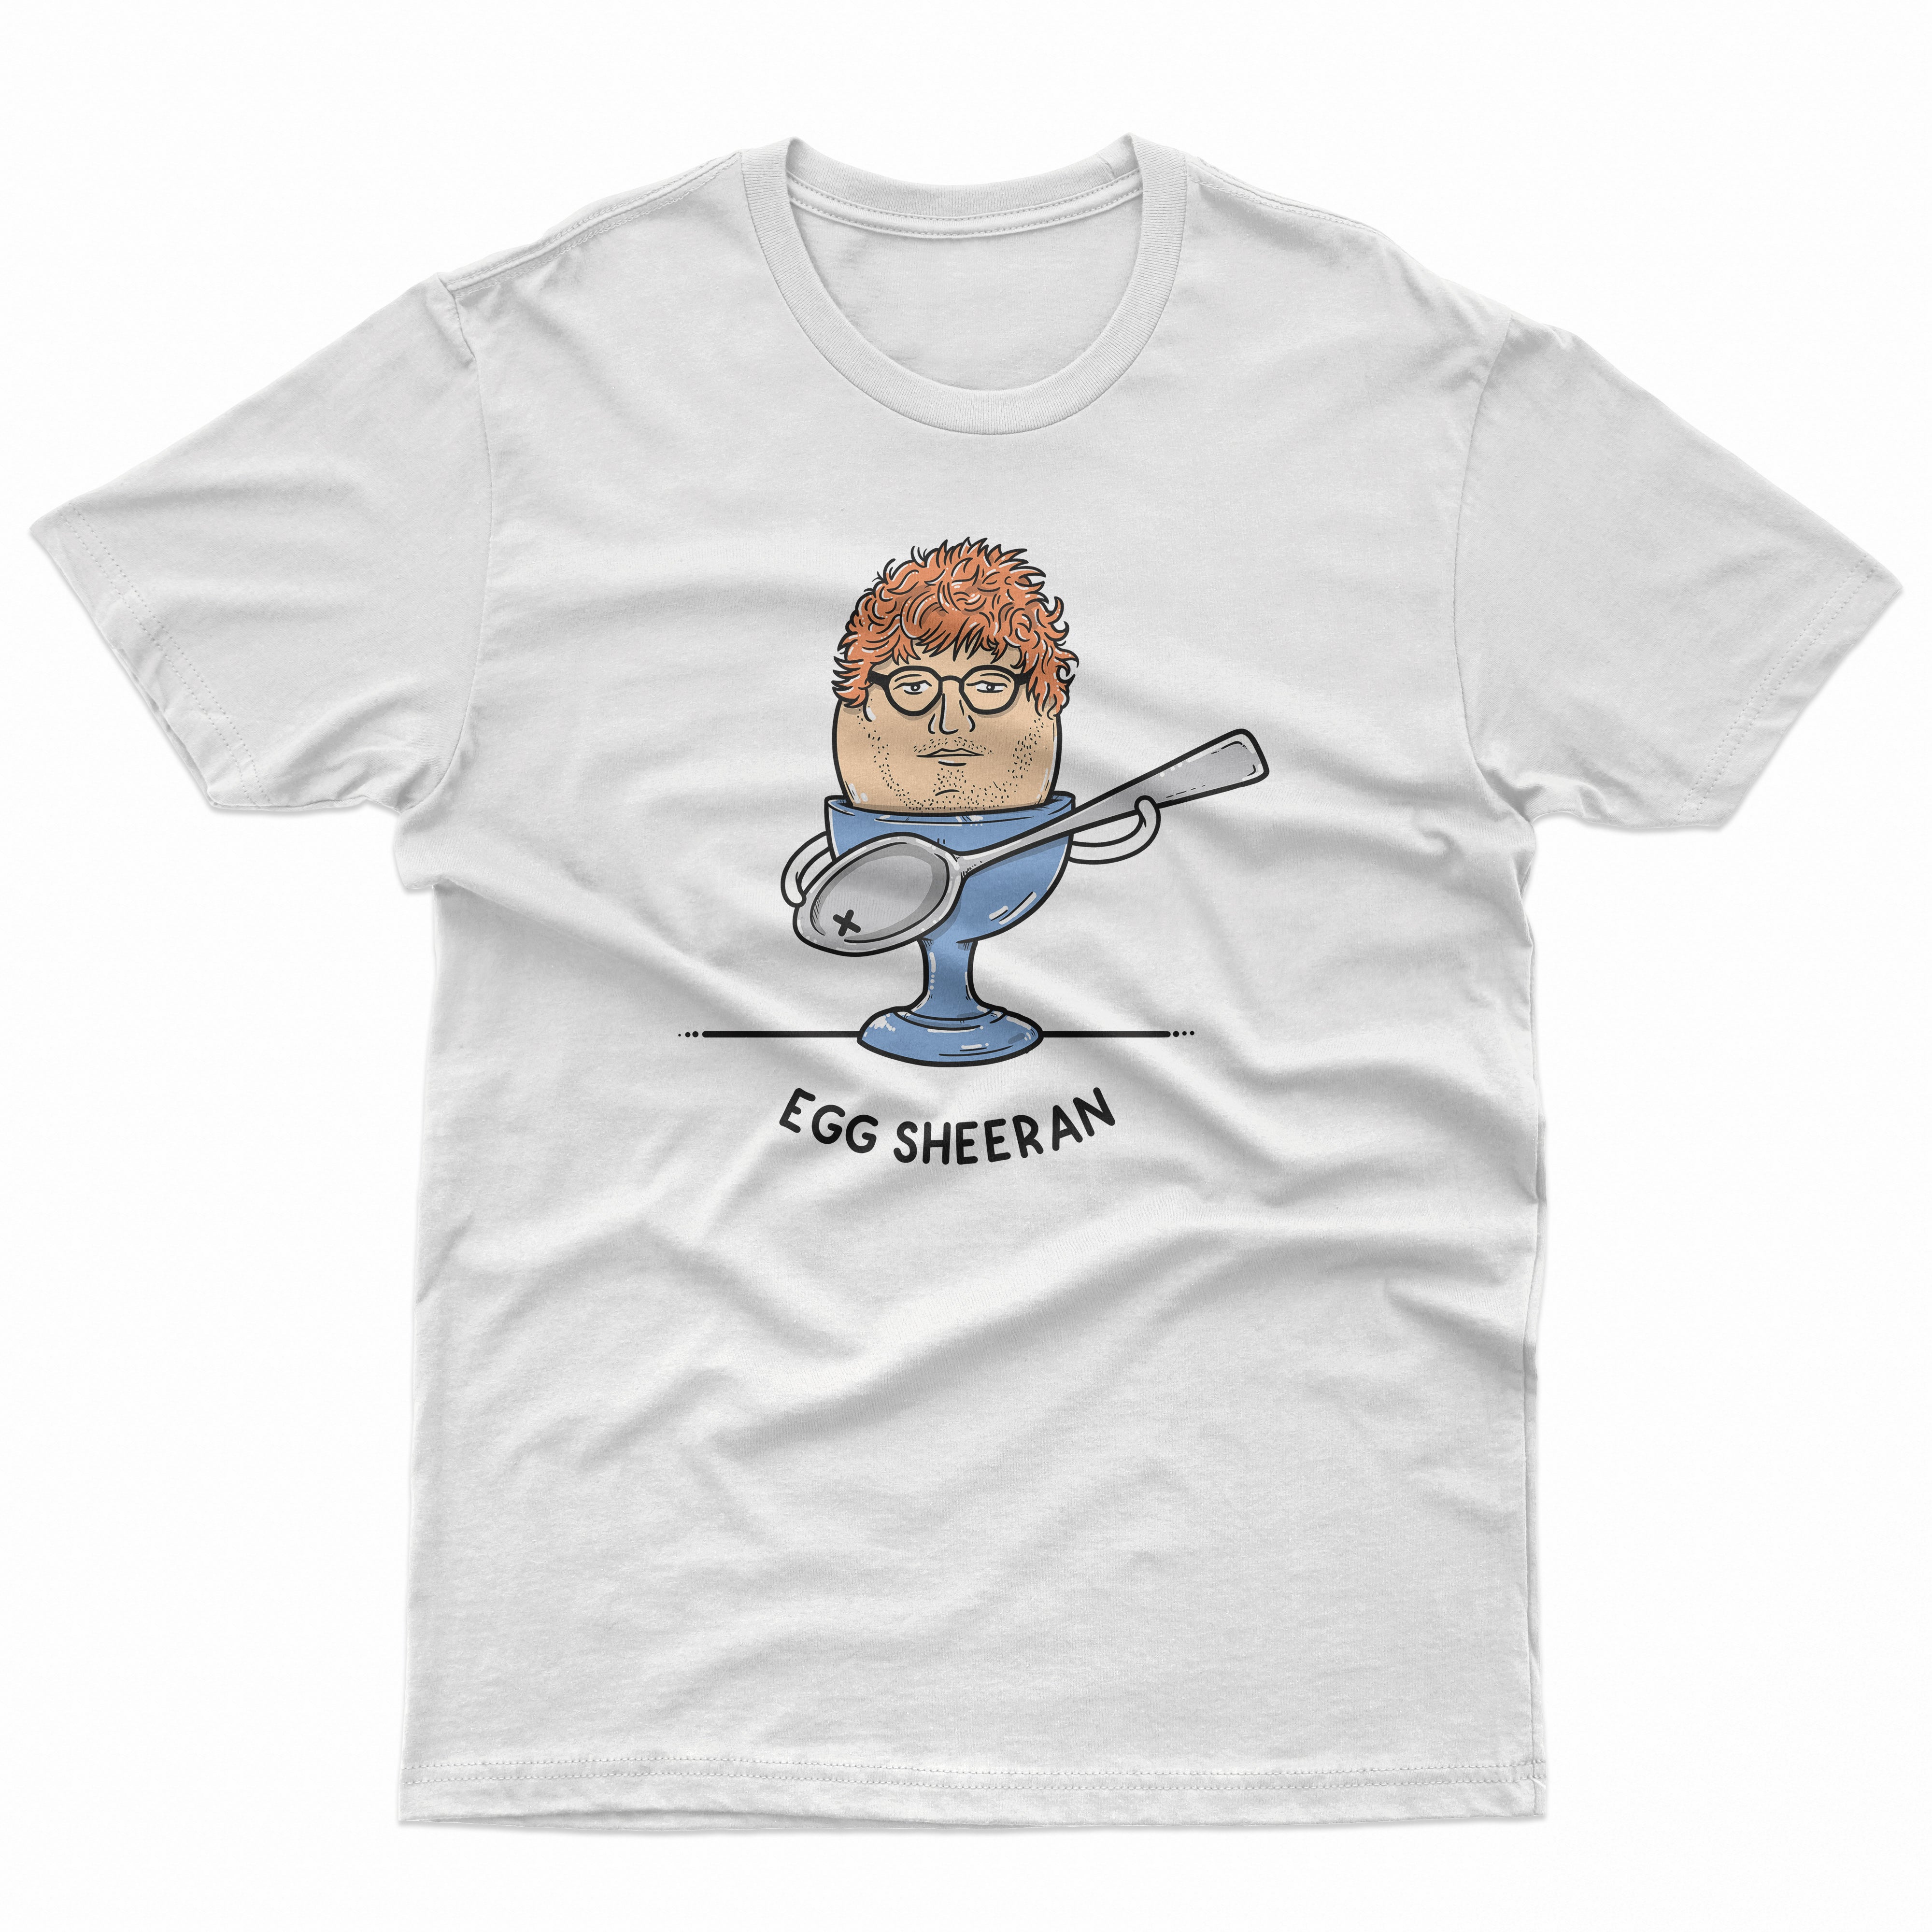 Egg Sheeran Kids T Shirt